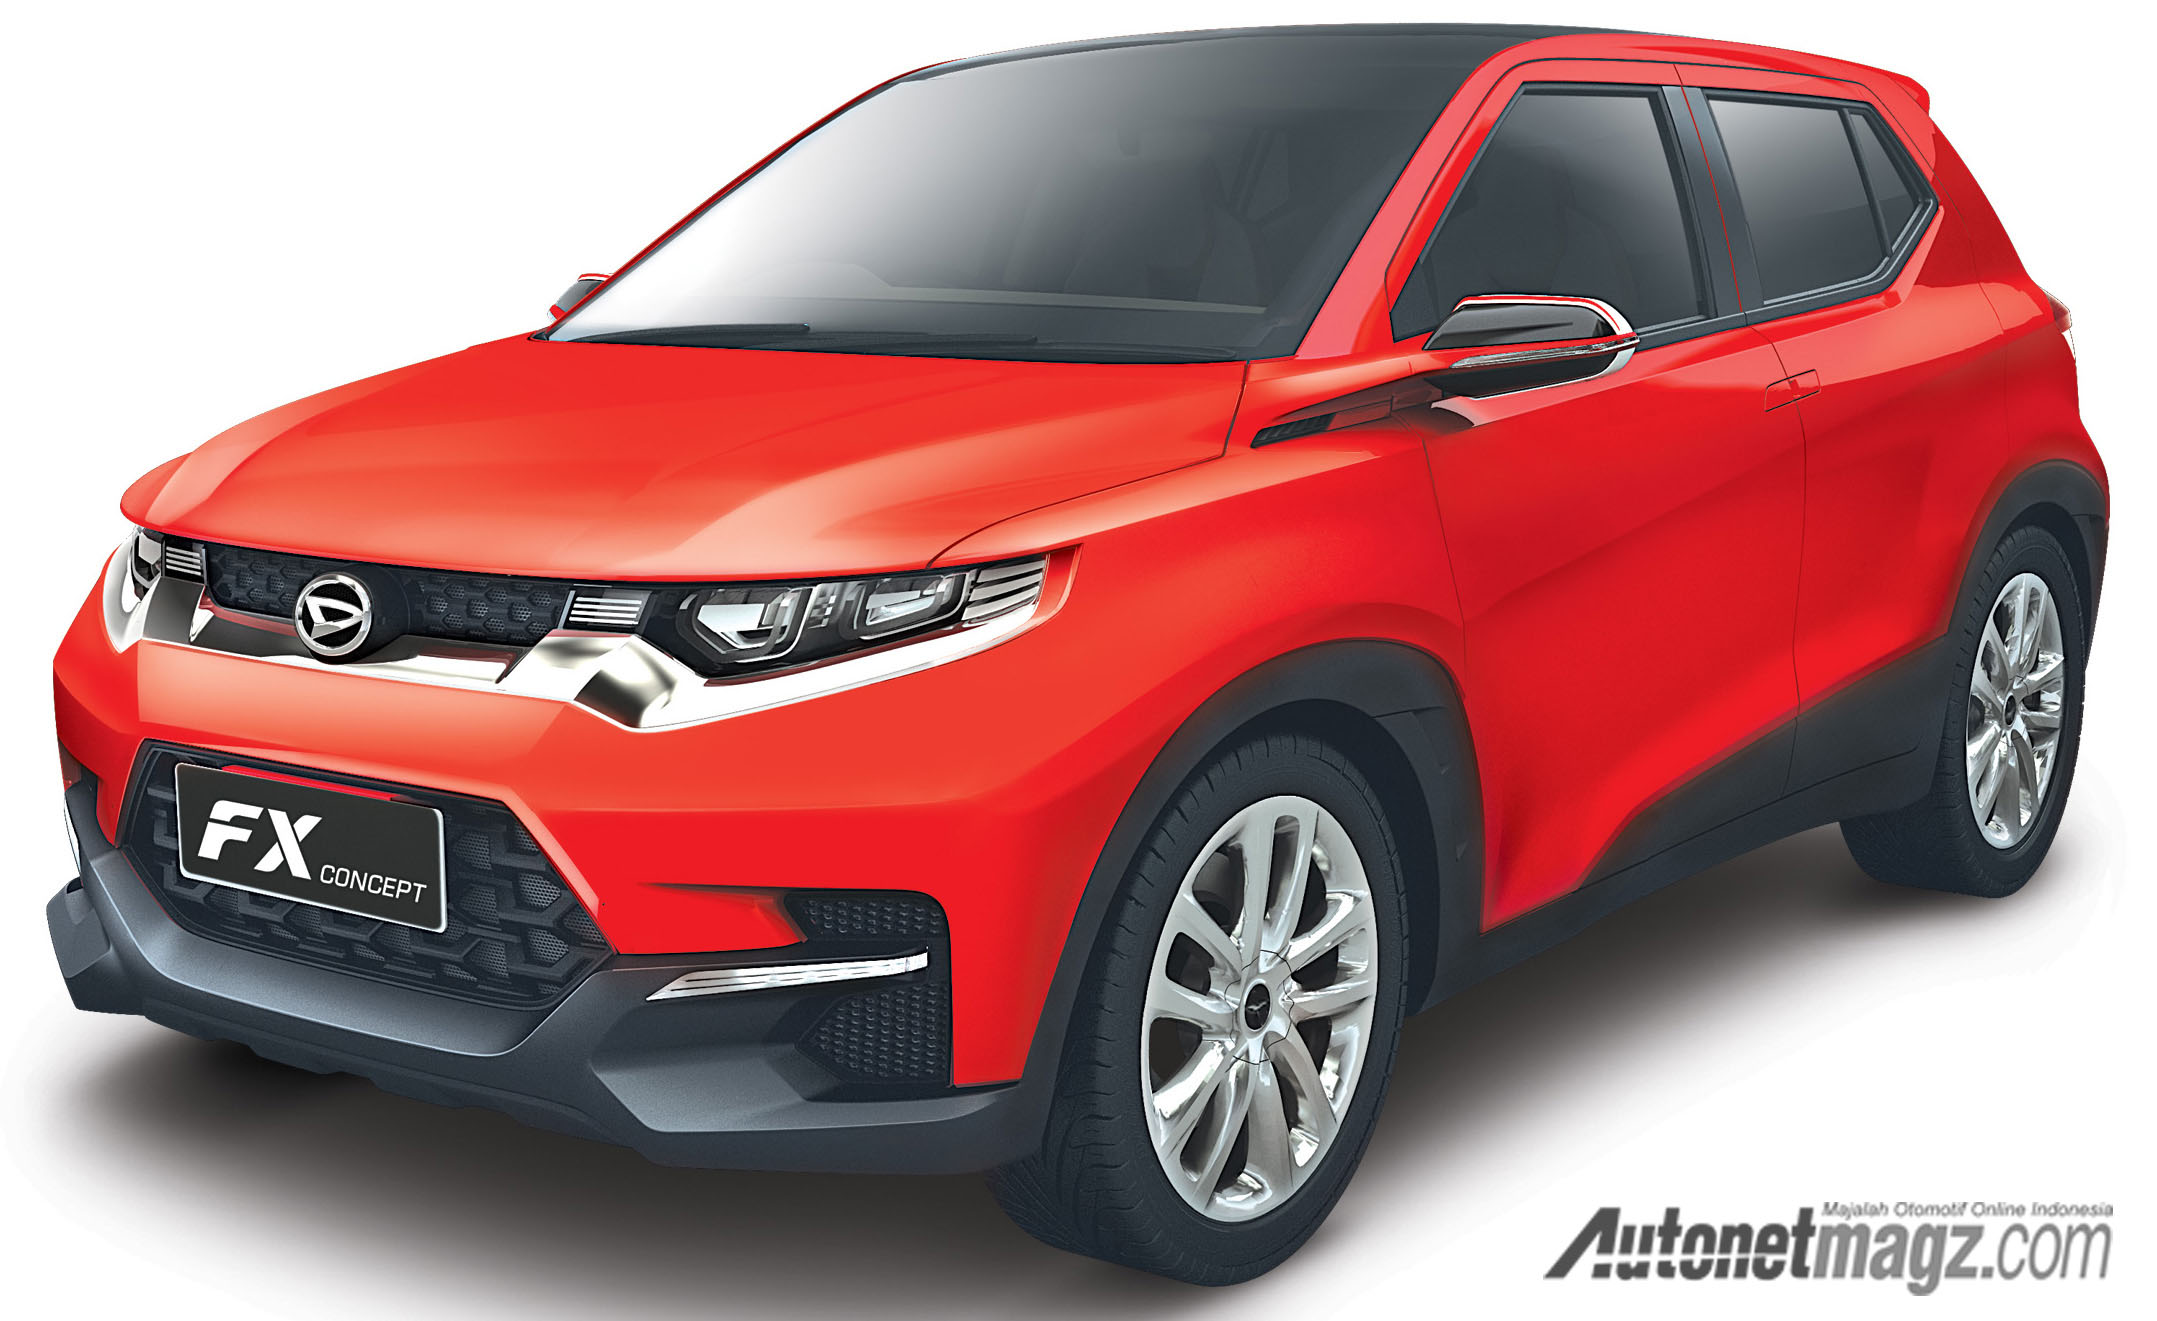 Berita, Daihatsu FX Concept depan: Perodua Serius Produksi Compact SUV, Akankah Menjadi Ayla Versi SUV?